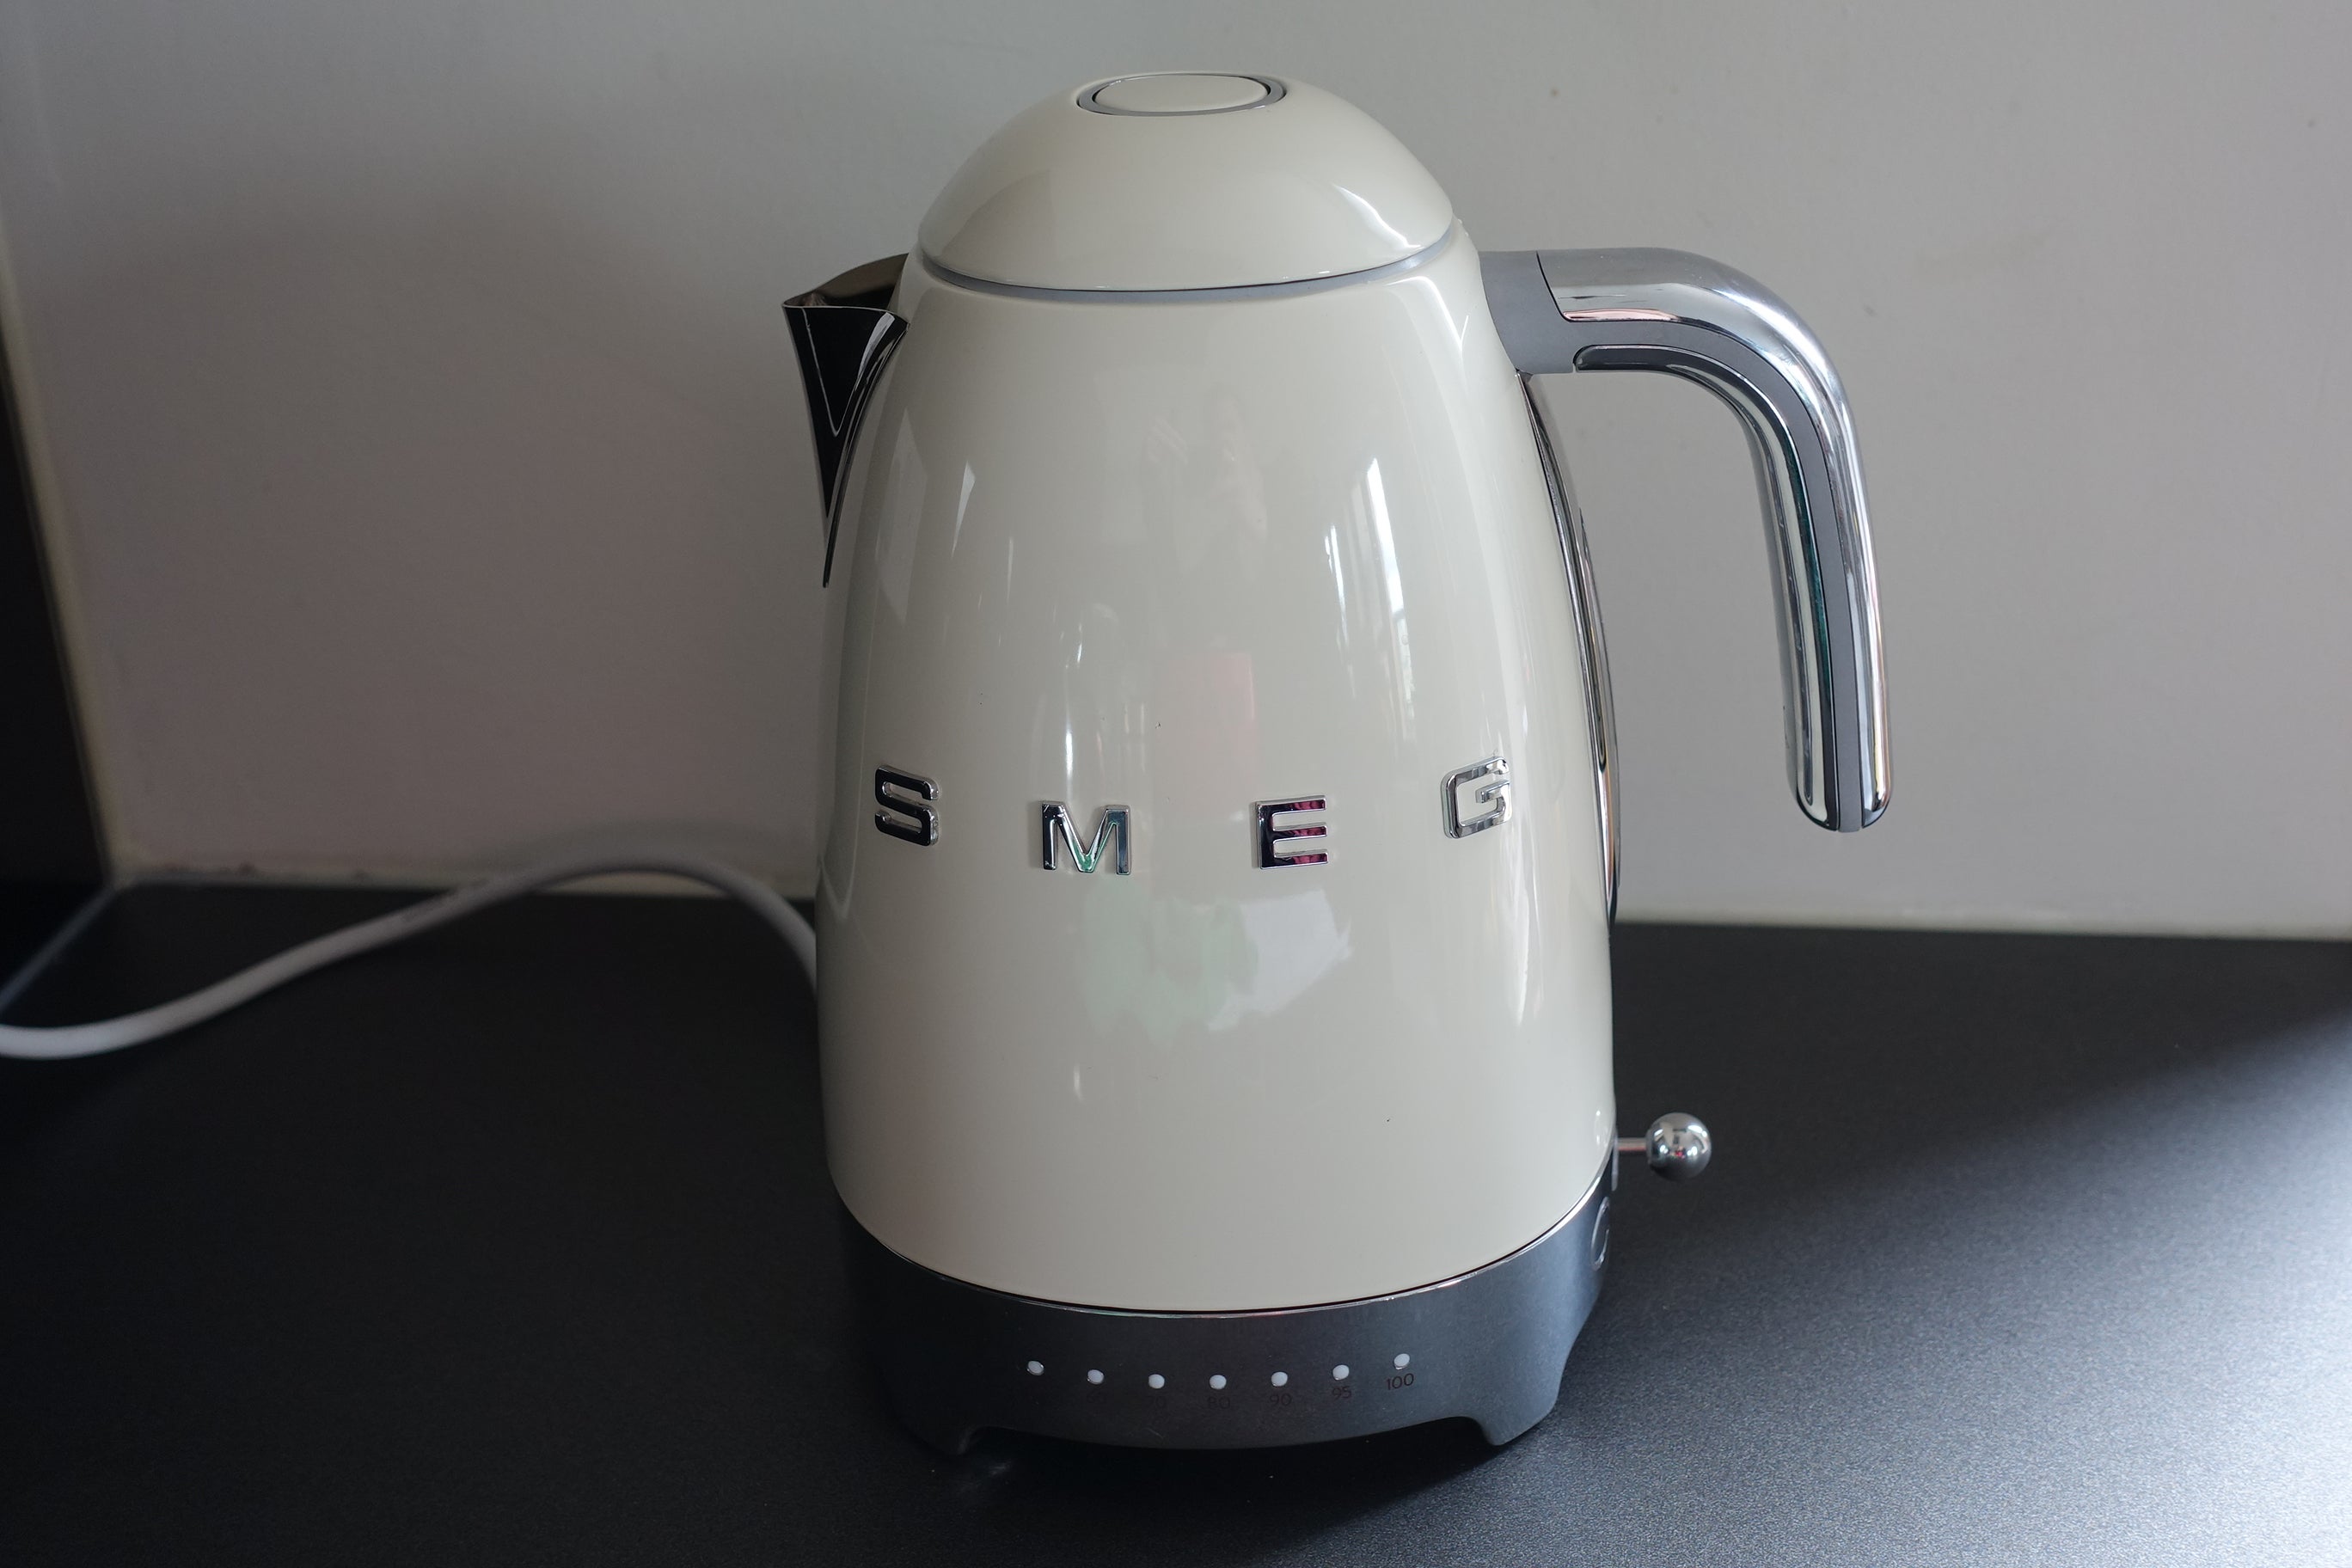 smeg stainless steel kettle